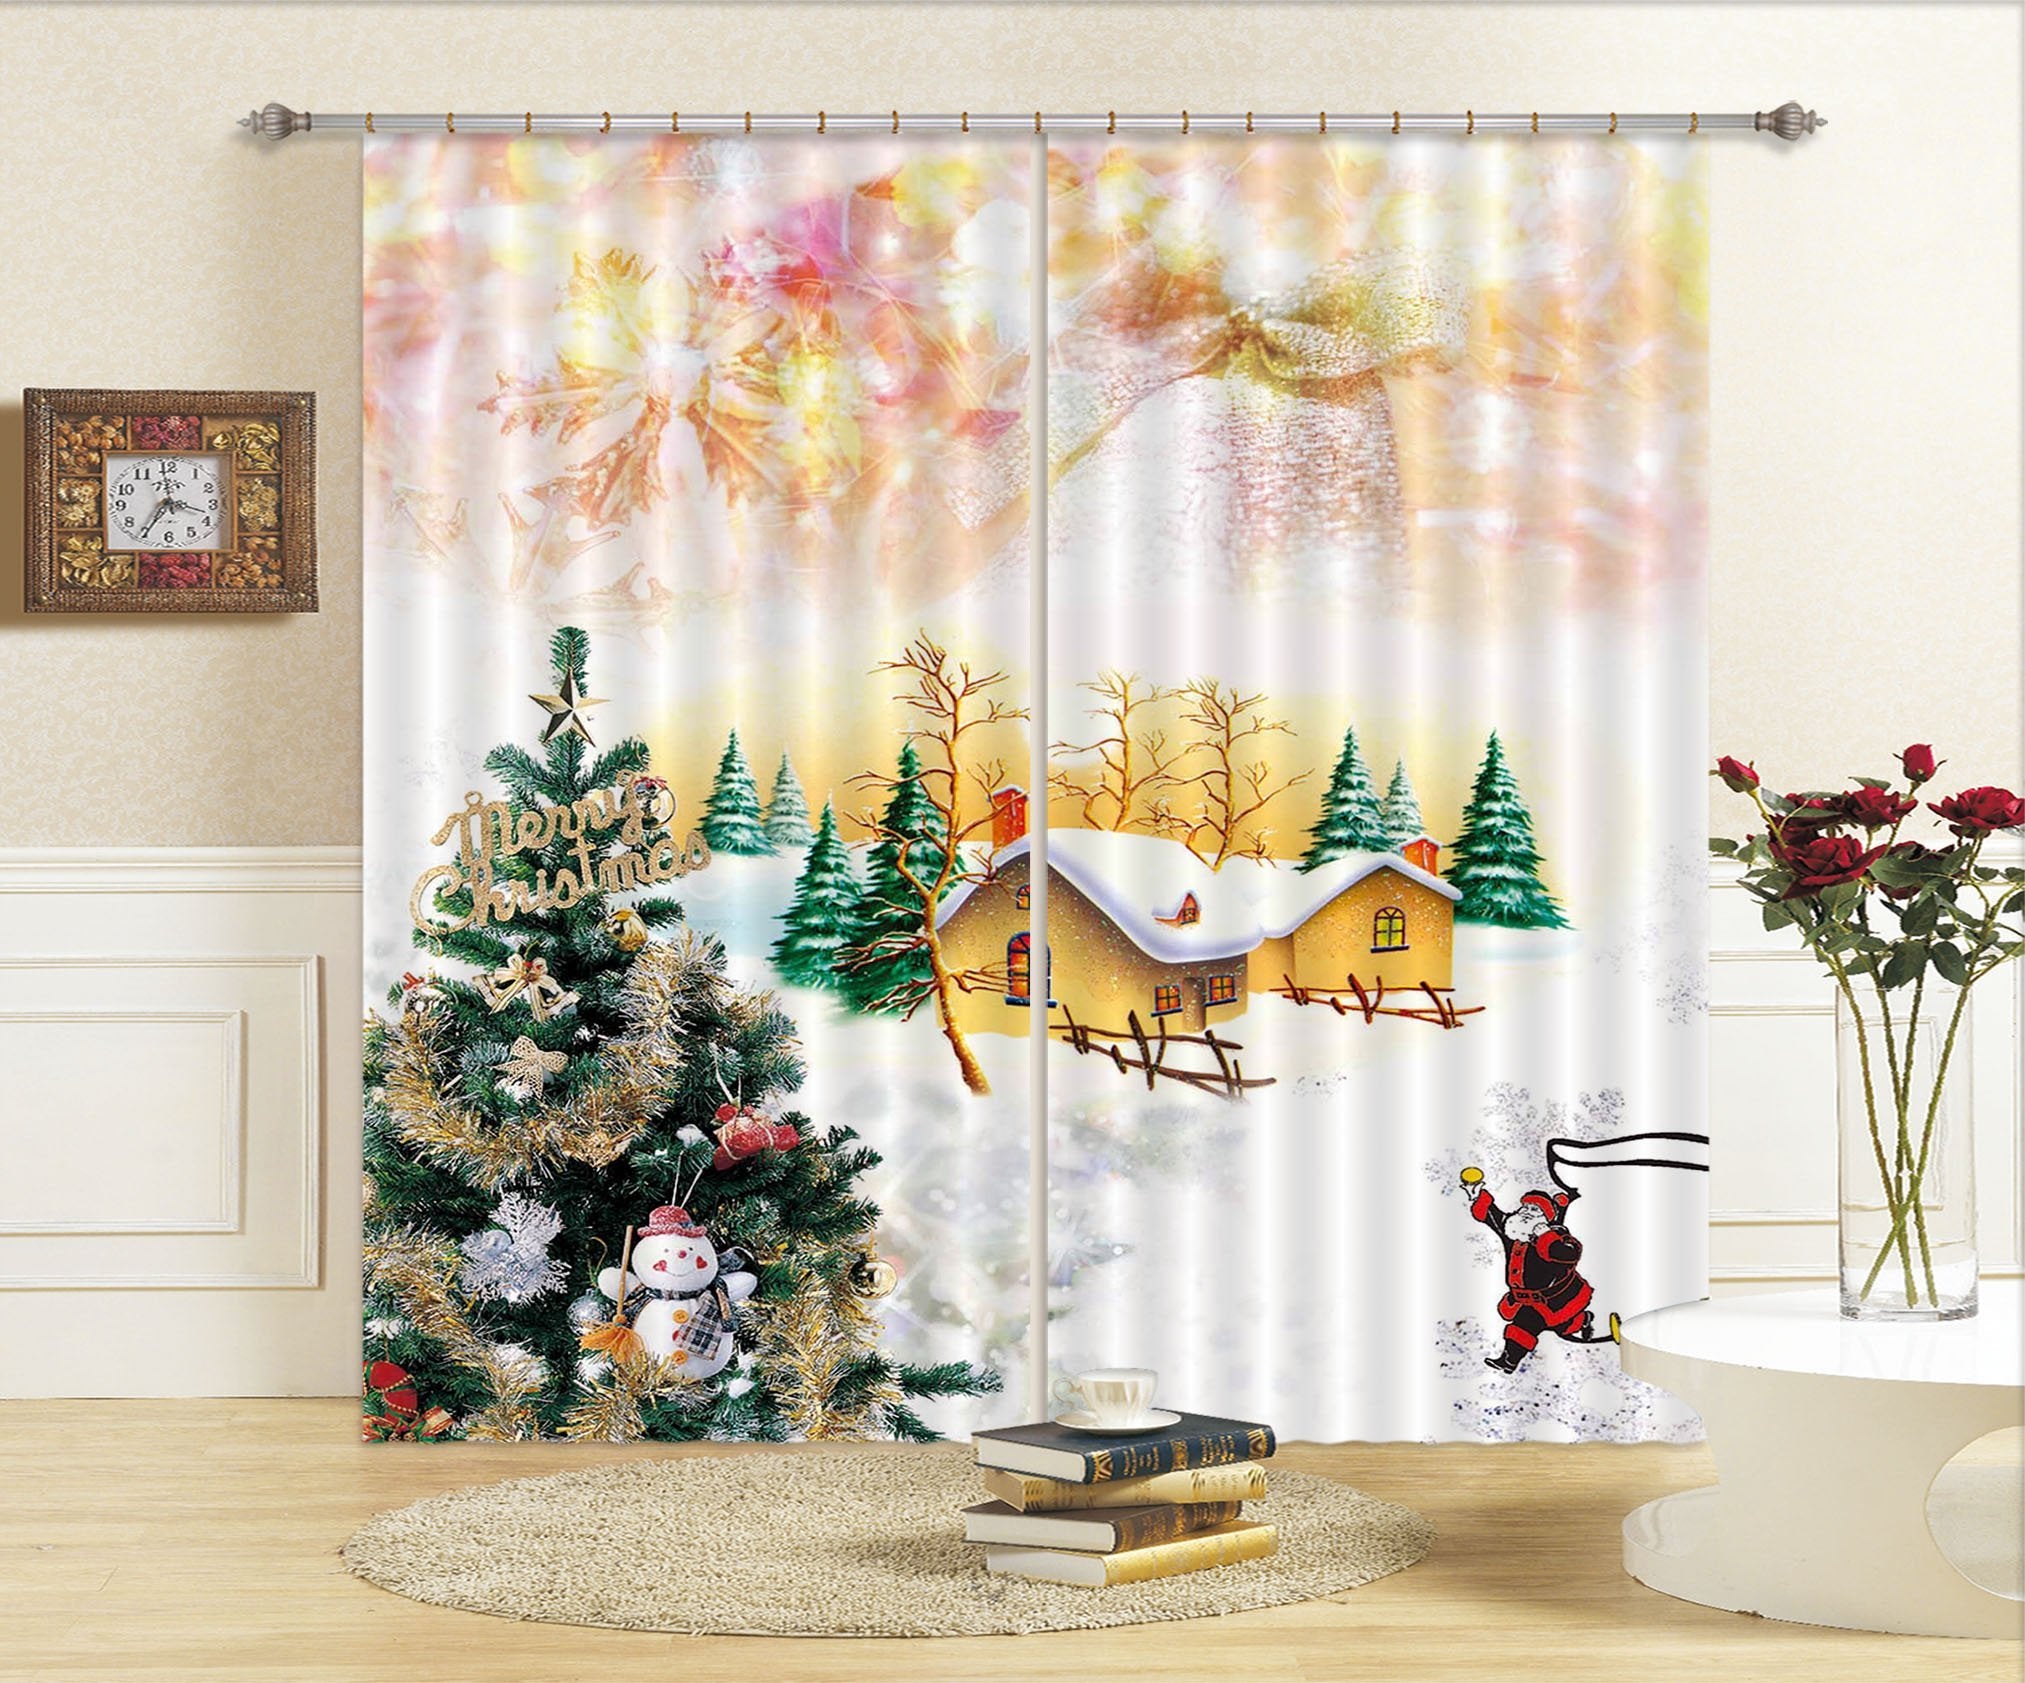 3D Christmas Tree House 41 Curtains Drapes Curtains AJ Creativity Home 